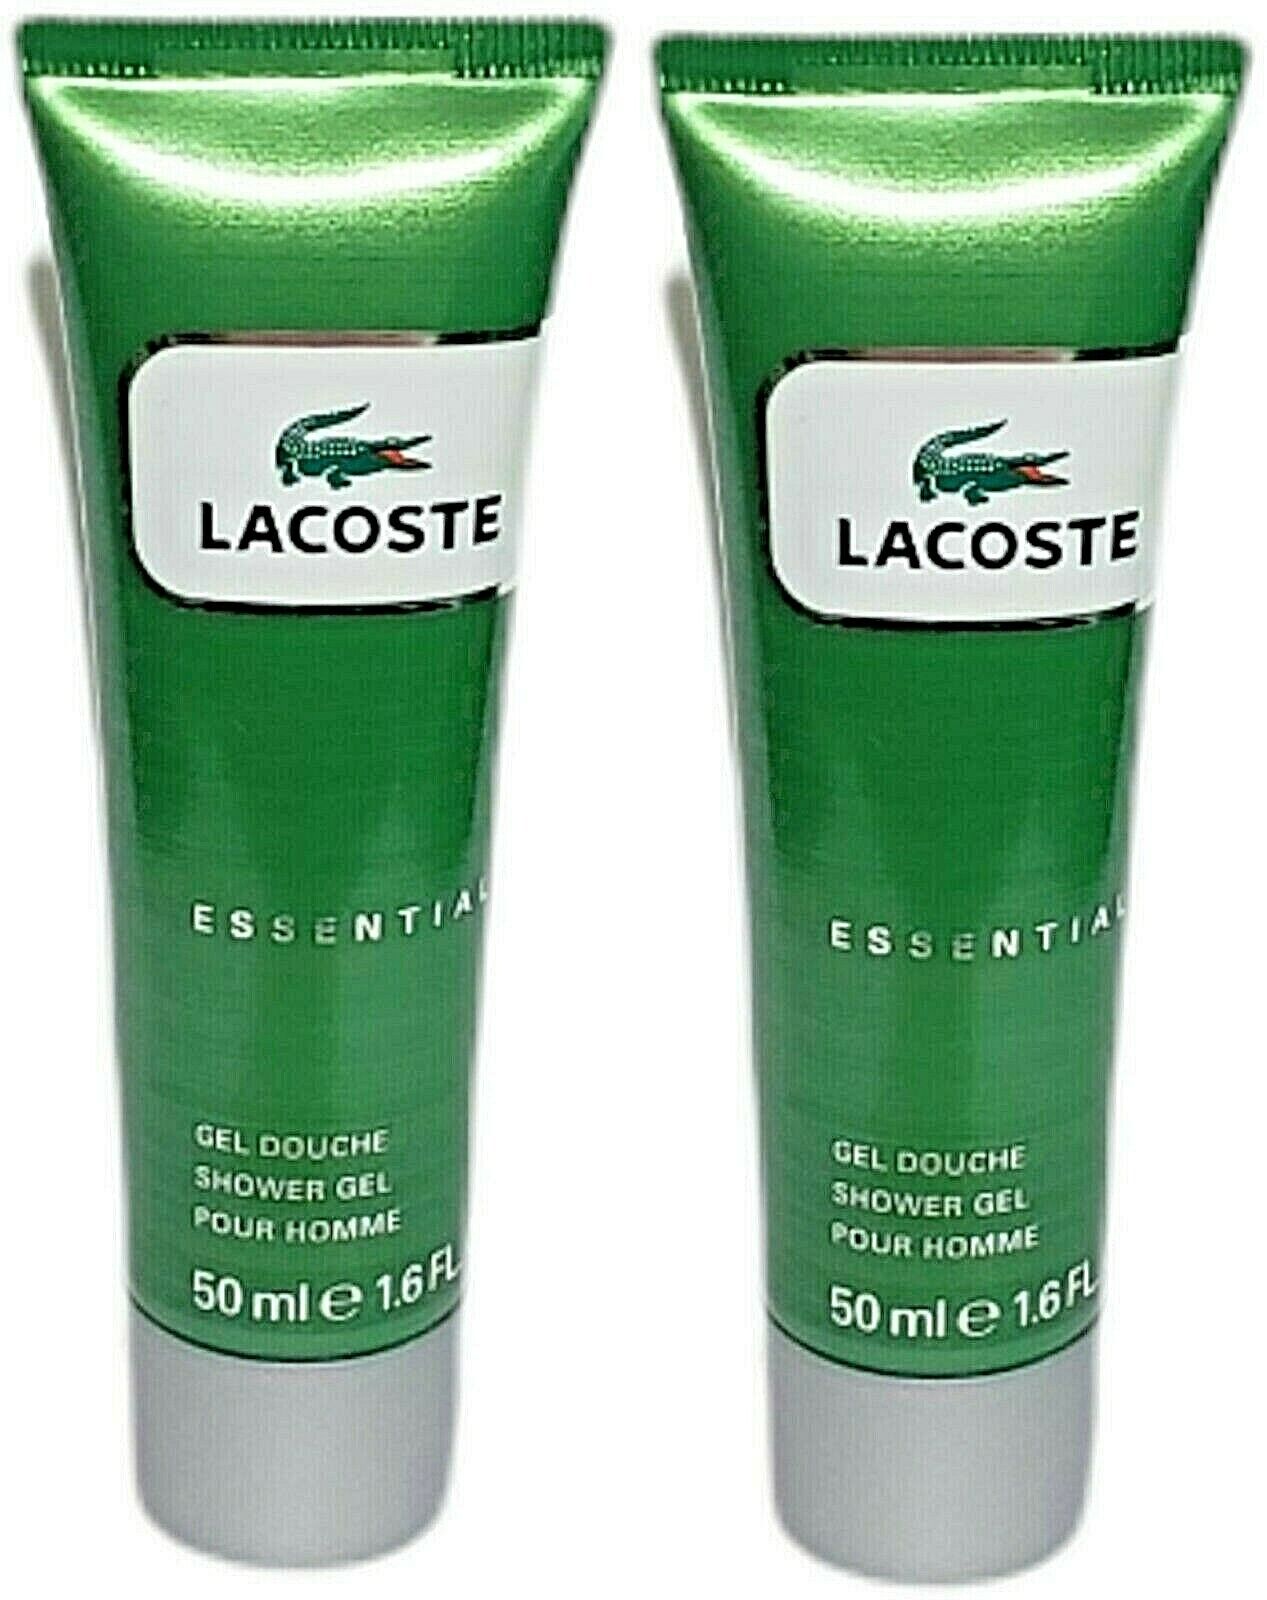 Lacoste Essential Pour Homme Shower Gel lot of 2  50 ml / 1.6 fl oz Each